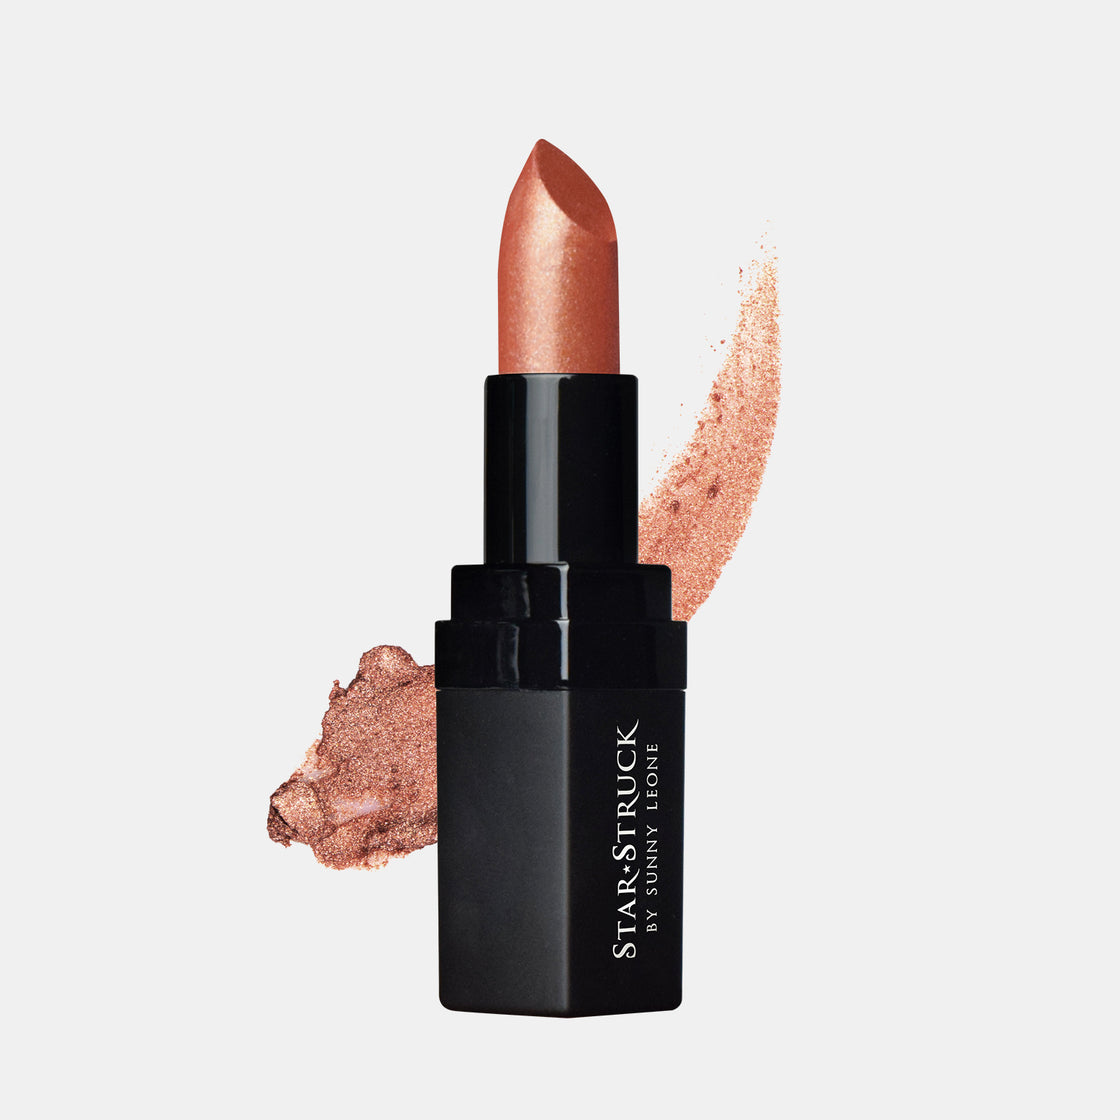 Bronze Beauty - Shimmer Lipstick - Brown, Metallic Lipsticks | 4.2gms